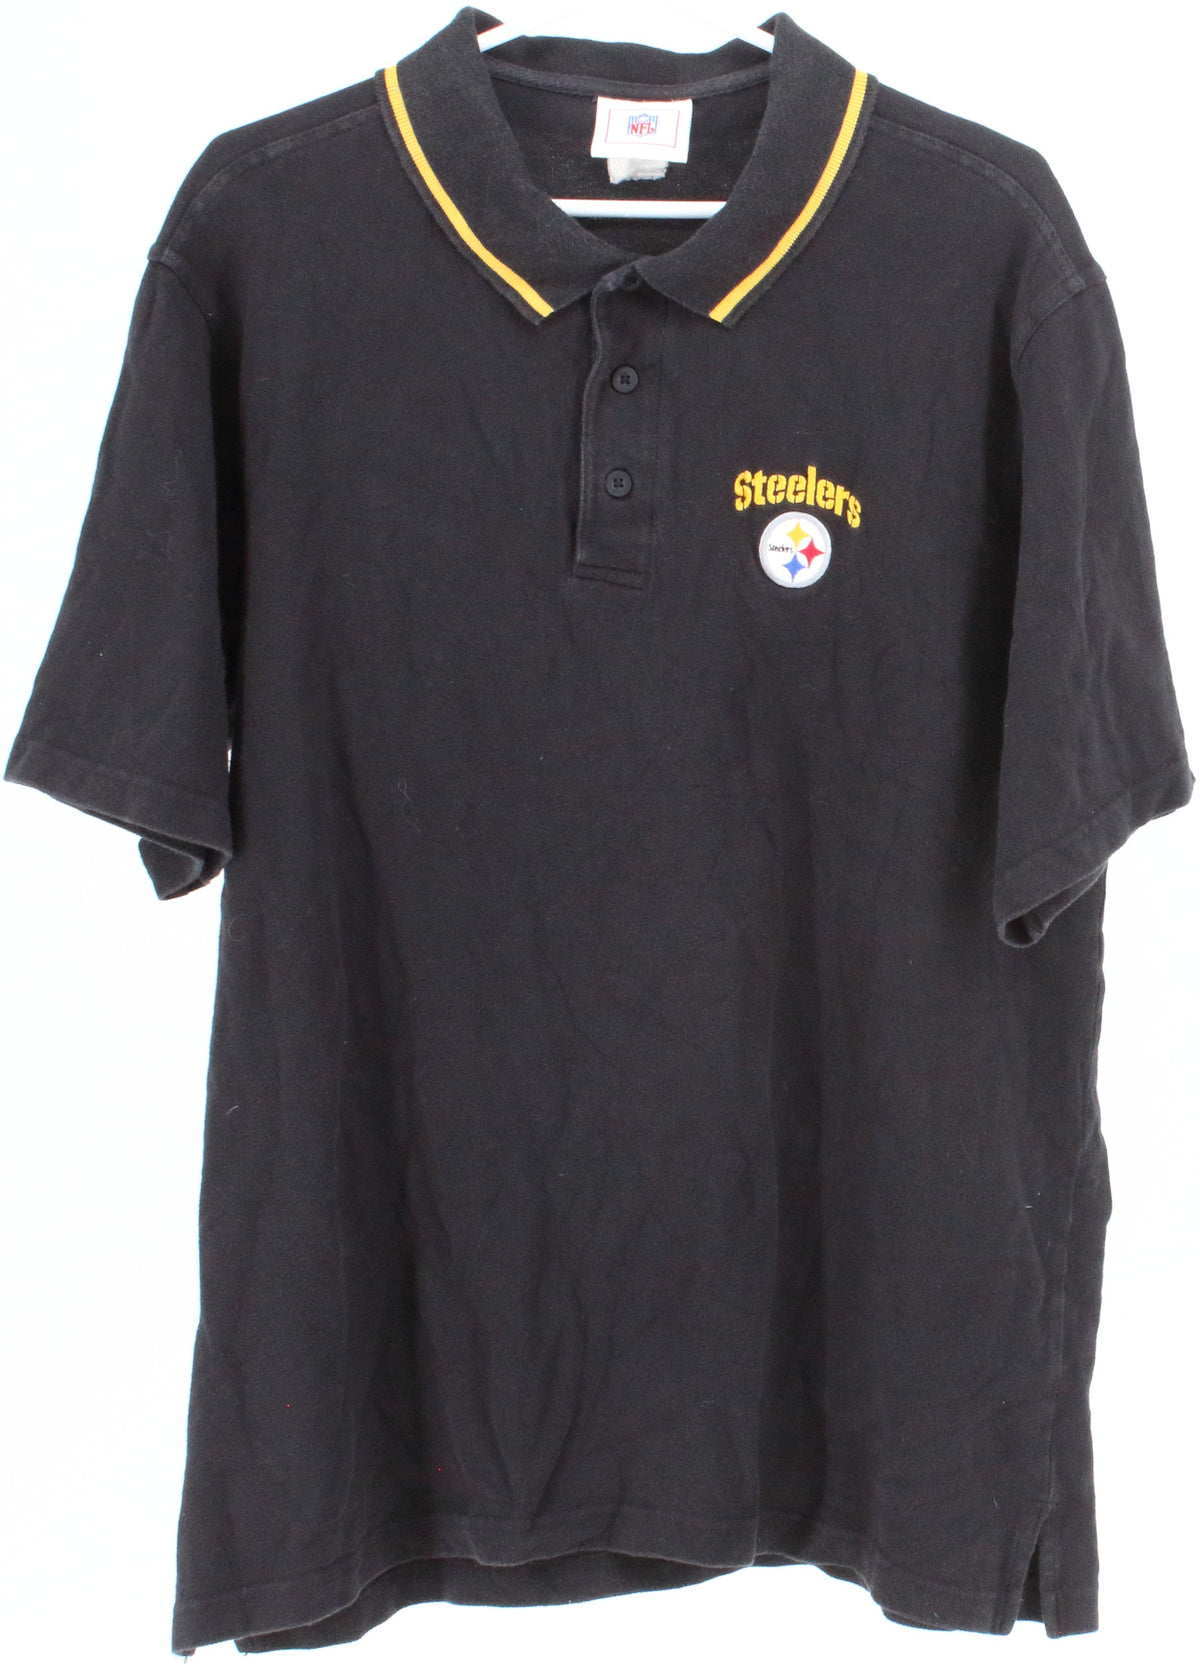 NFL Steelers Black Polo Shirt